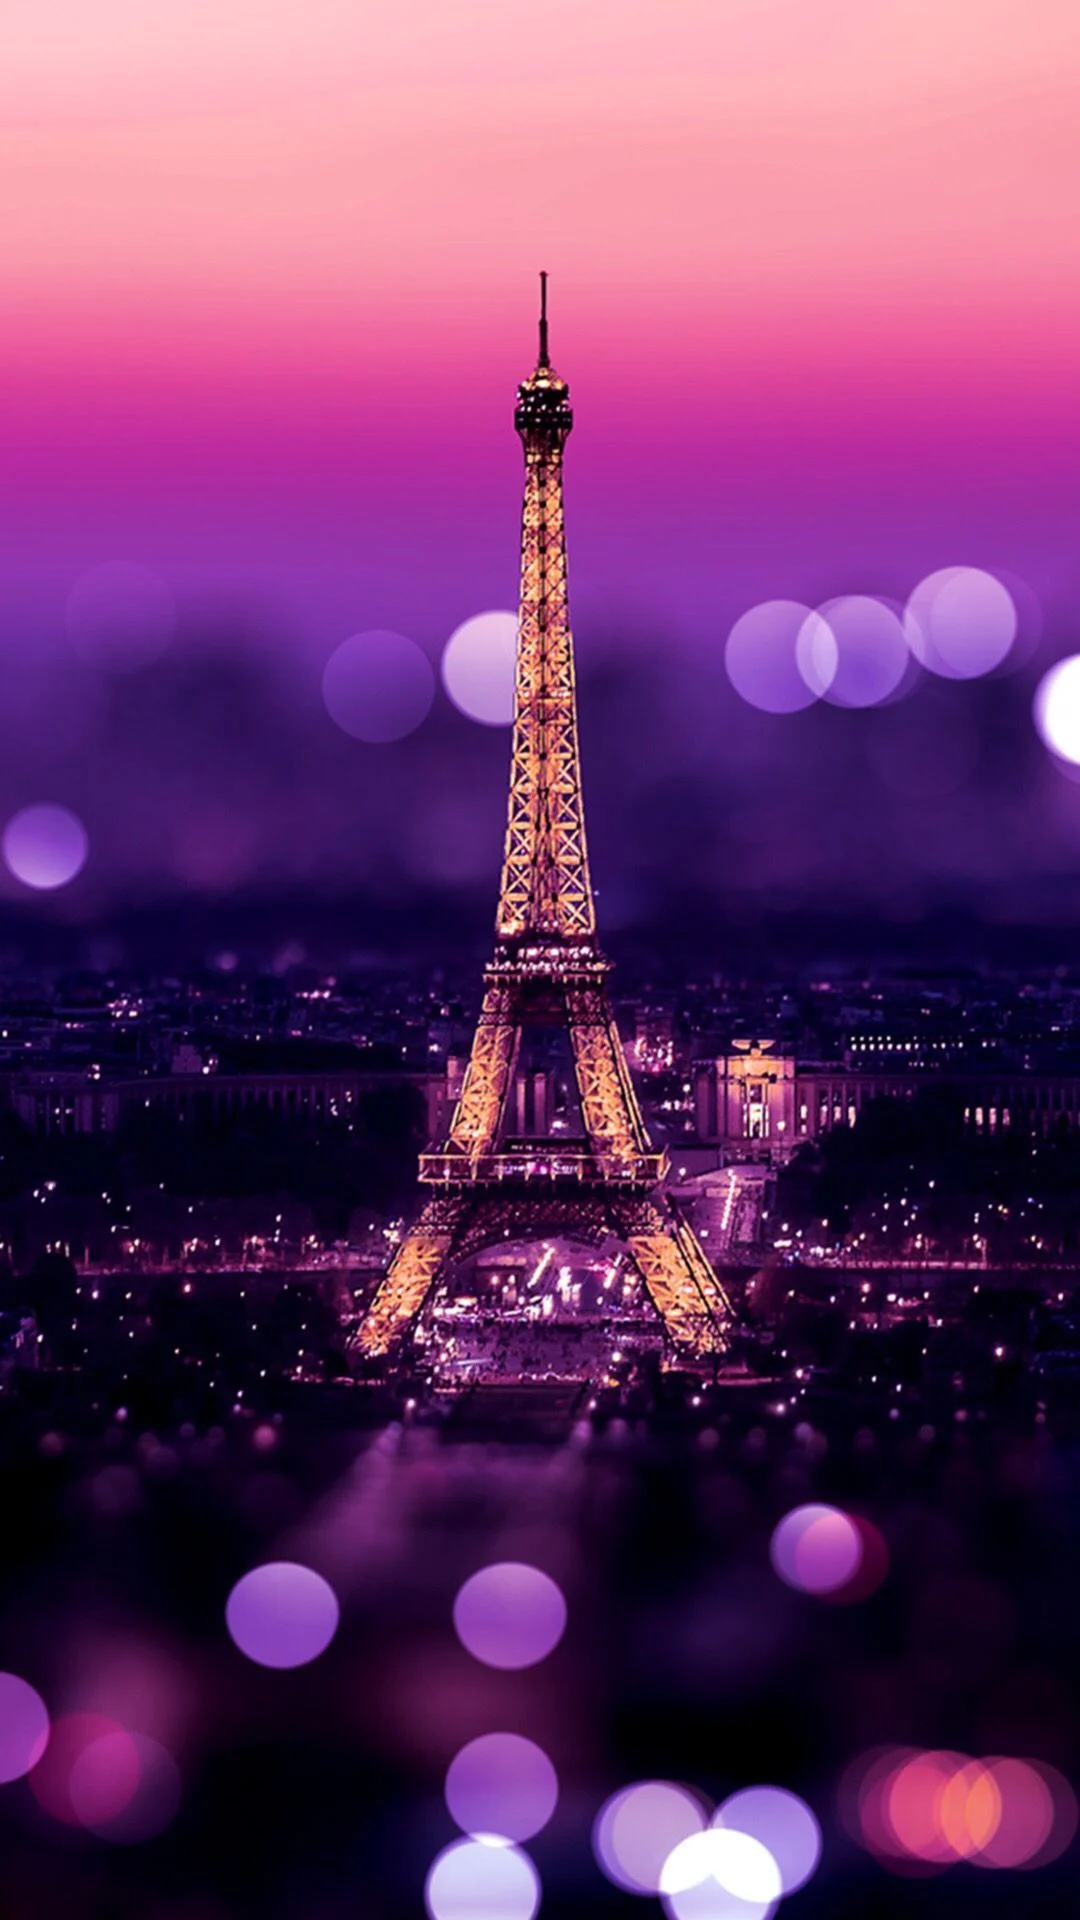 Paris Photos Download The BEST Free Paris Stock Photos  HD Images